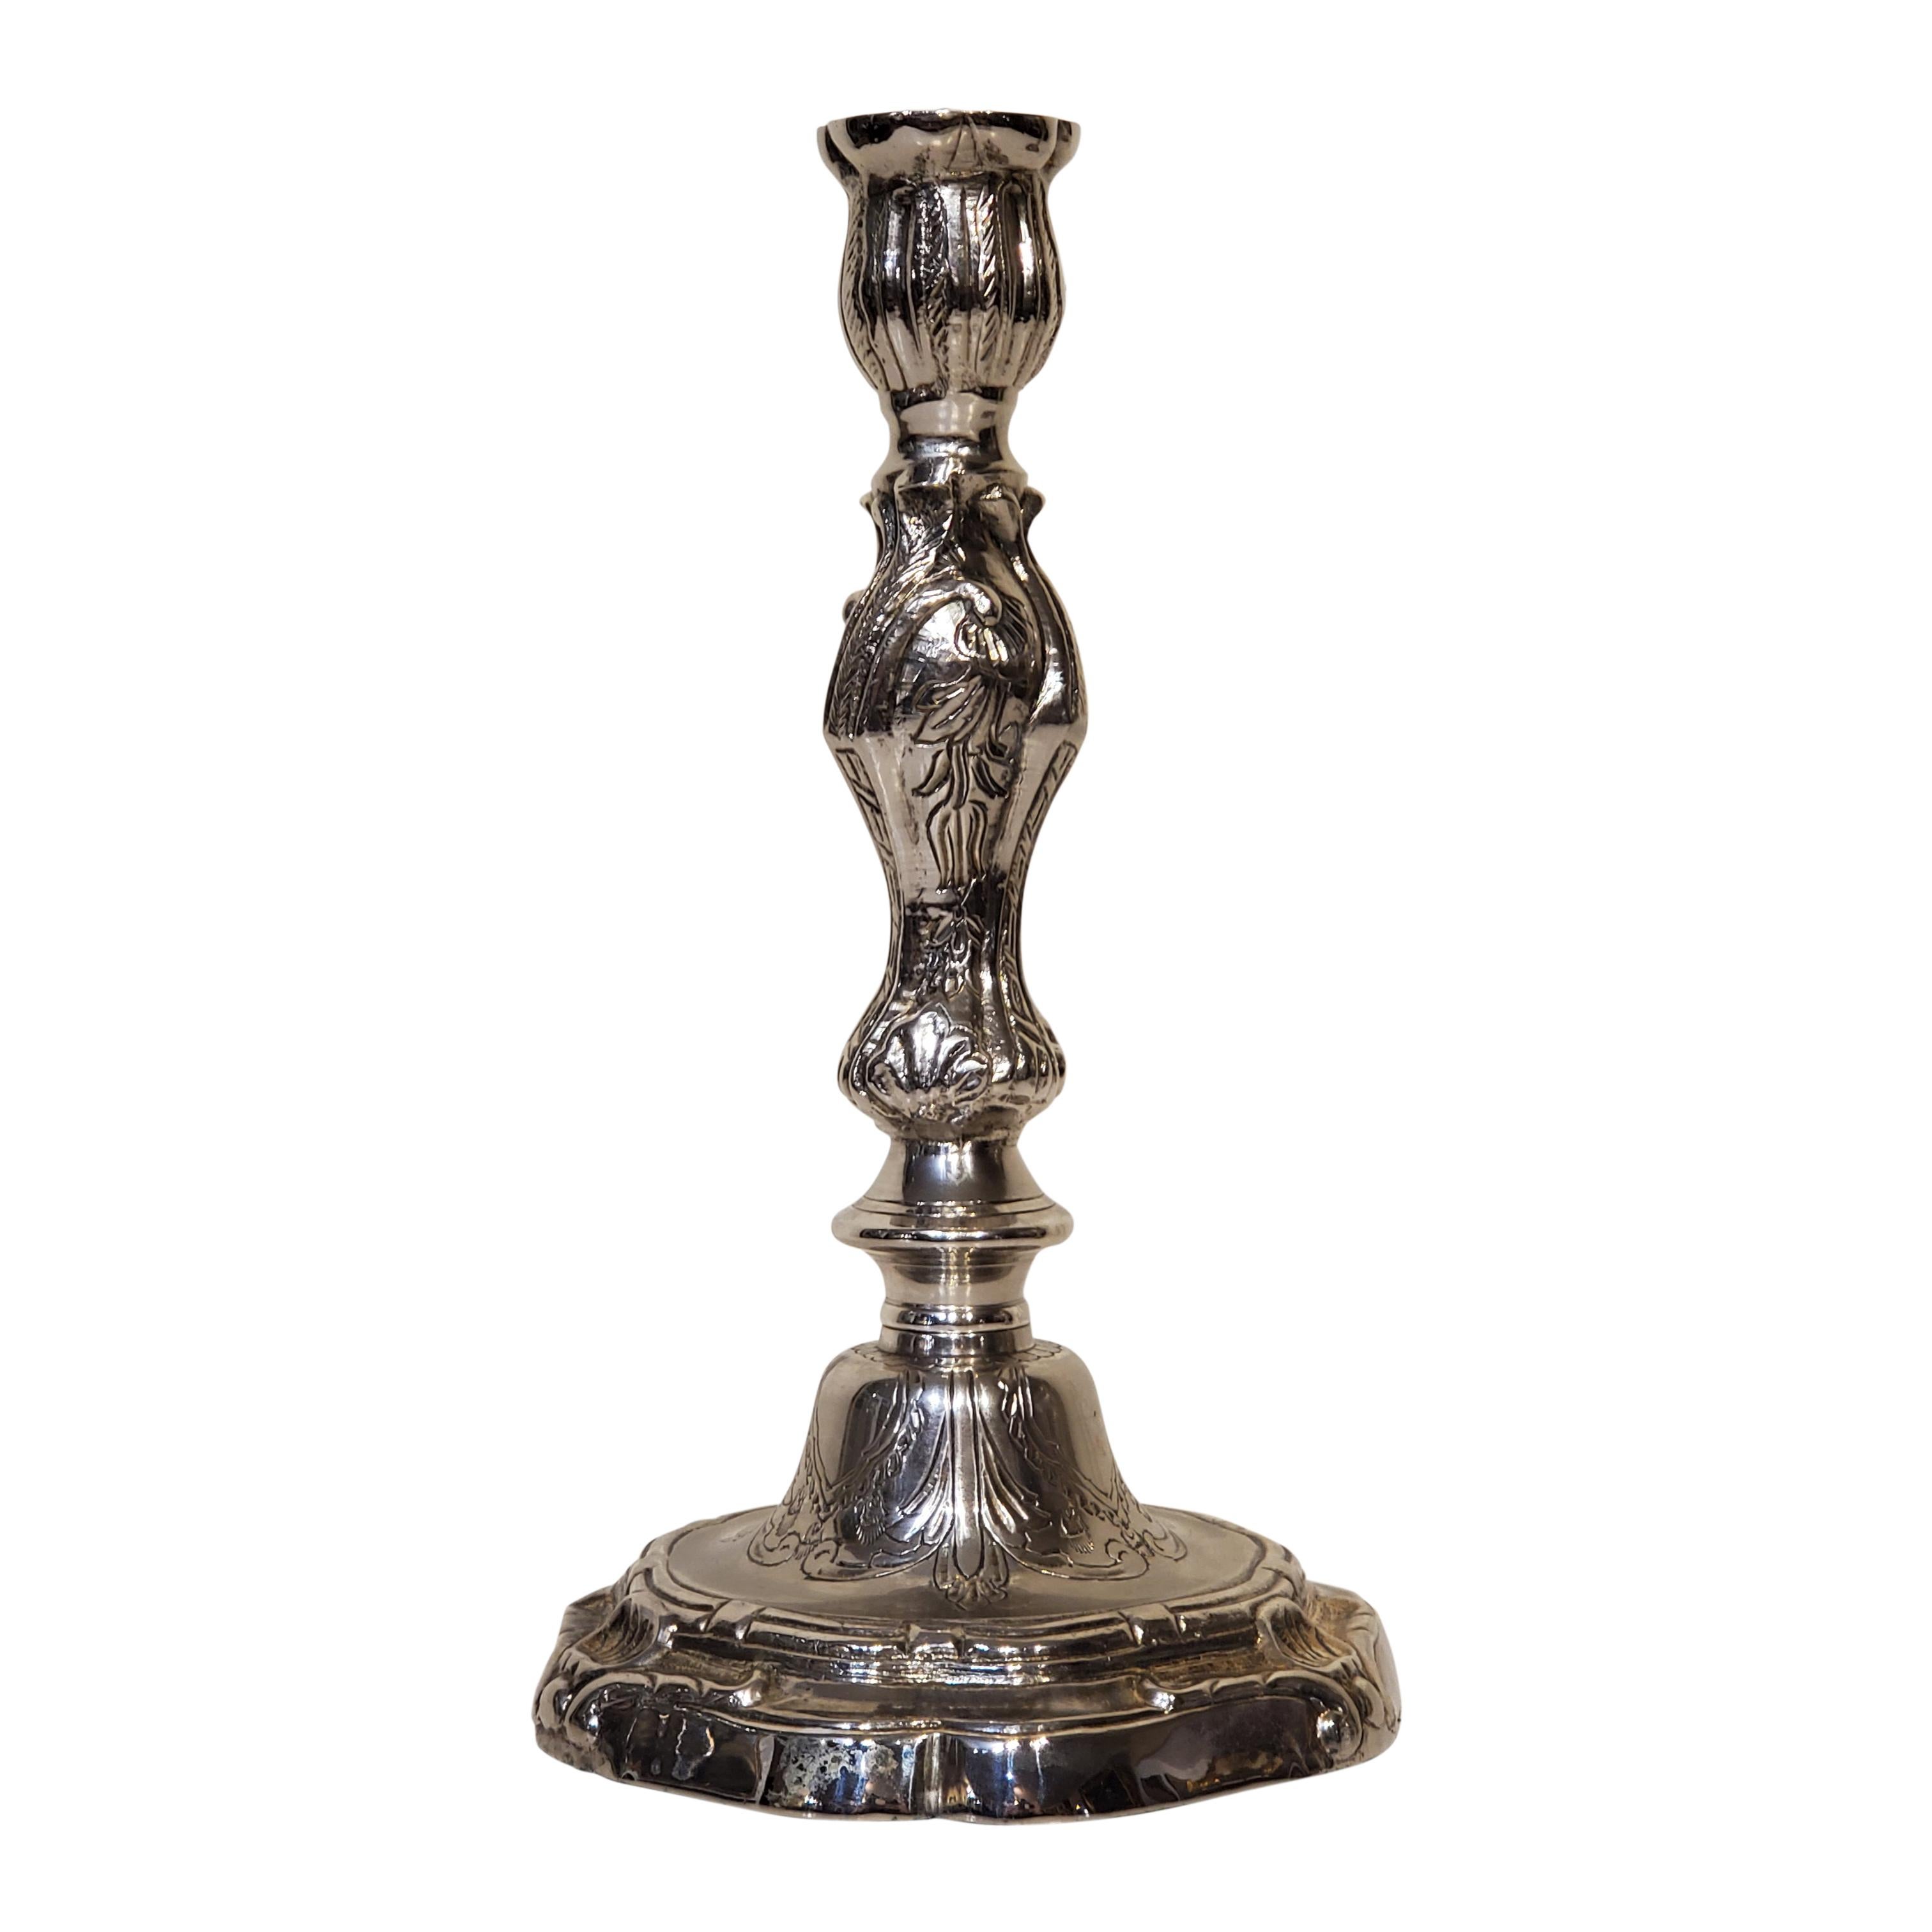 Paire de chandeliers de style Louis XV en métal argenté. Également disponibles en tant que lampes chandelles électrifiées.

Ils ont été moulés sur mesure à partir de chandeliers en bronze du XVIIIe siècle et mesurent 9,5 pouces de haut, 5,5 pouces